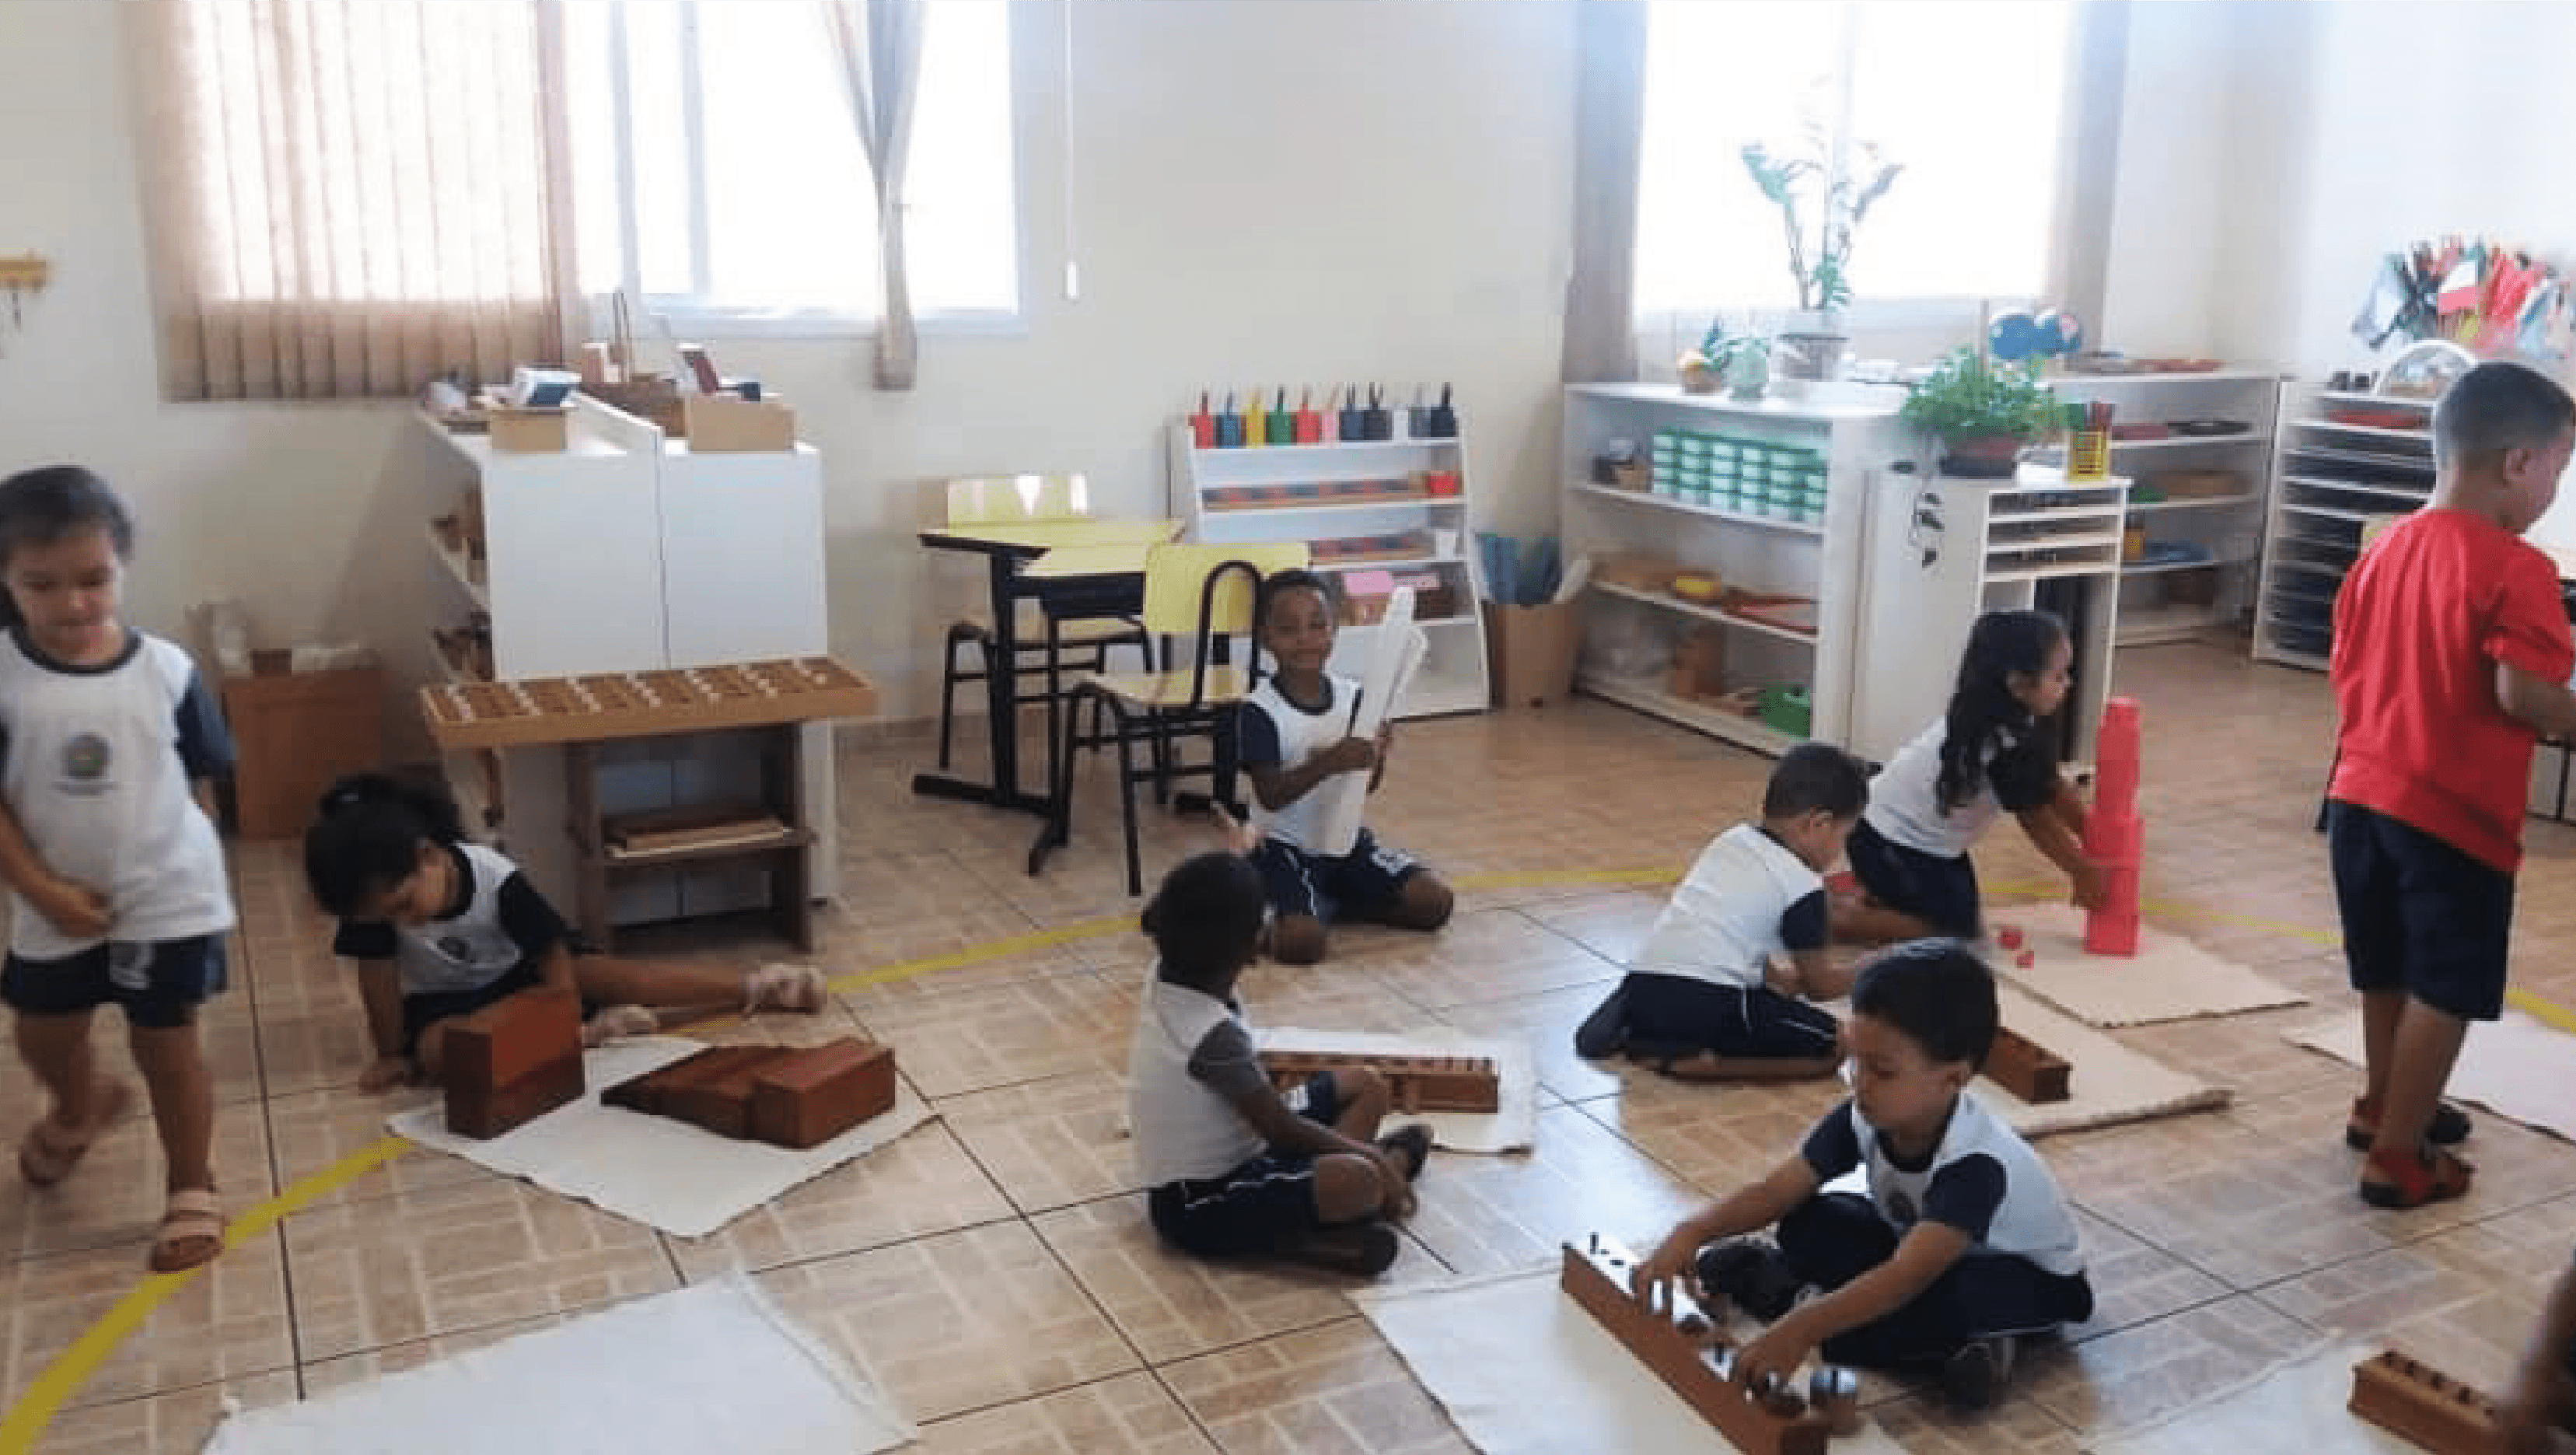 Imagem mostra crianças em uma sala de aula, sentadas no chão e interagindo com materiais lúdicos de aprendizagem